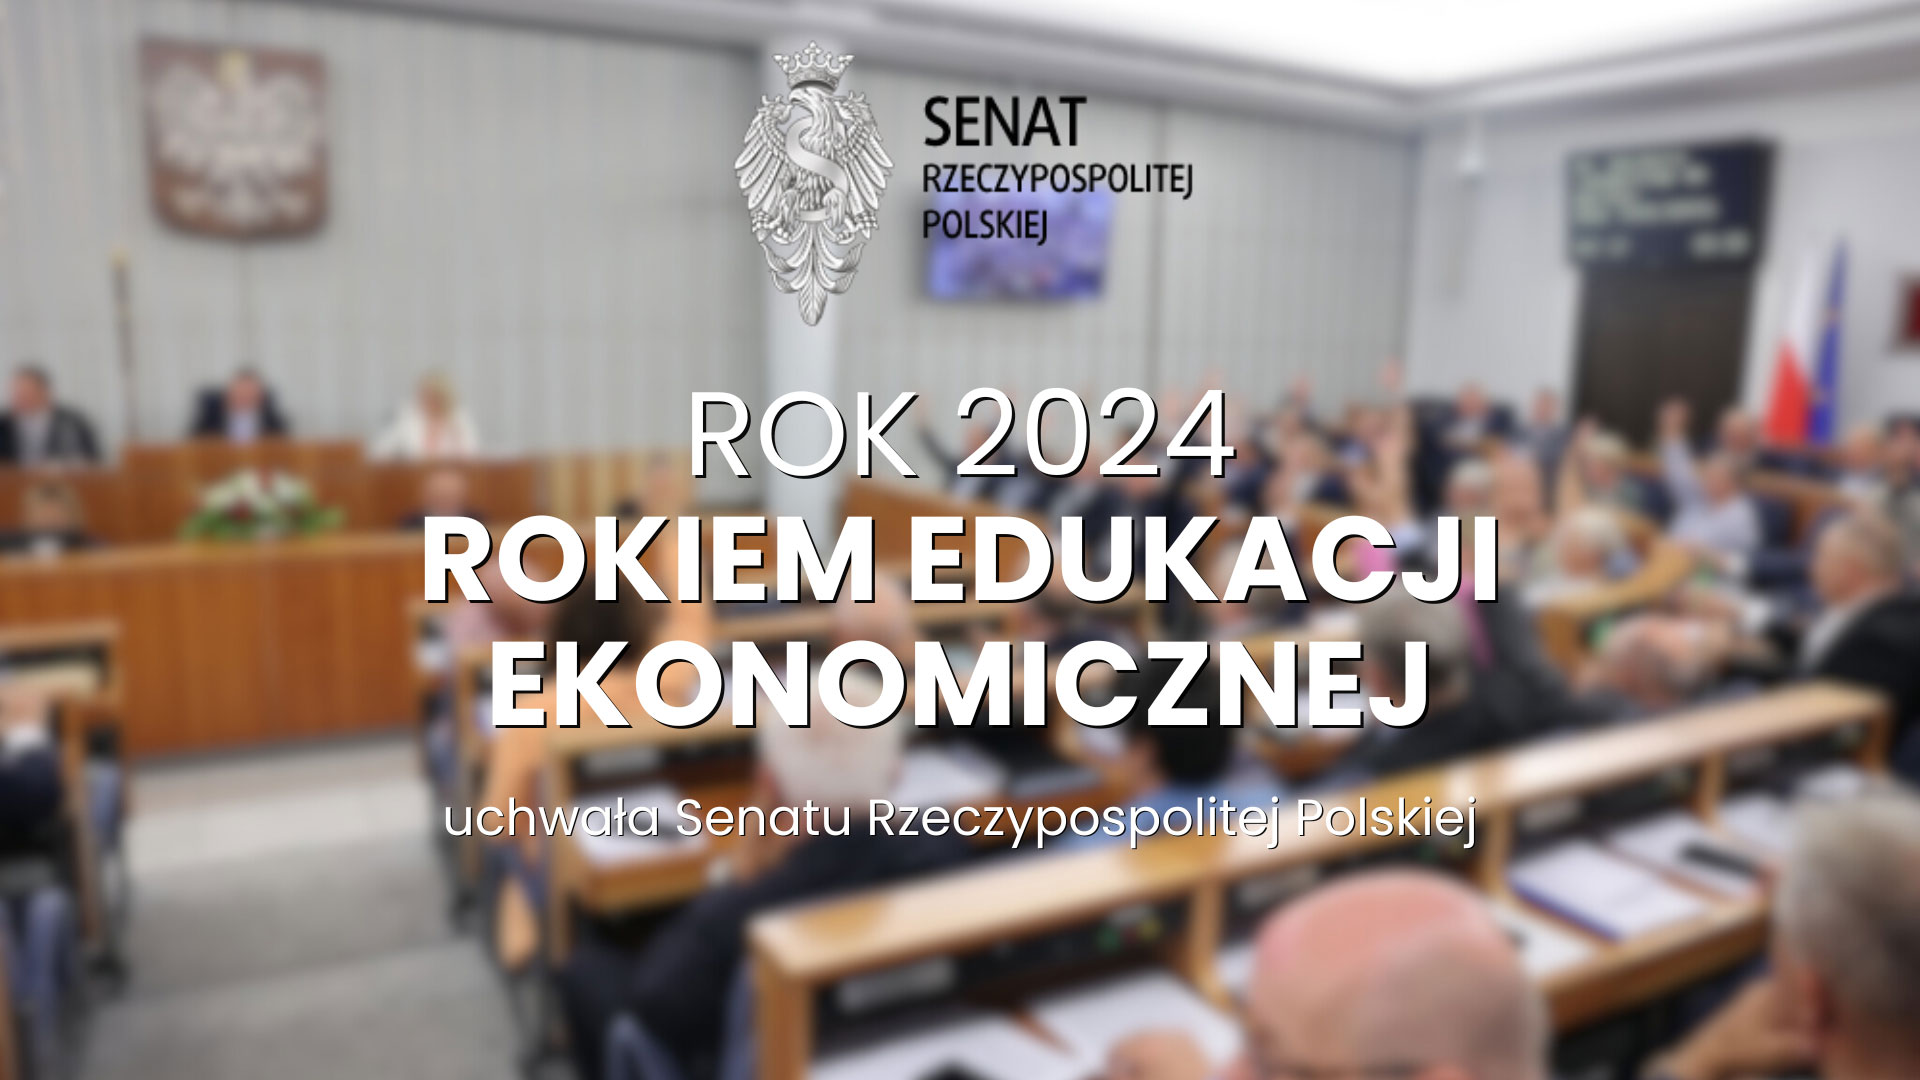 Rok 2024 – decyzją Senatu RP, Rokiem Edukacji Ekonomicznej